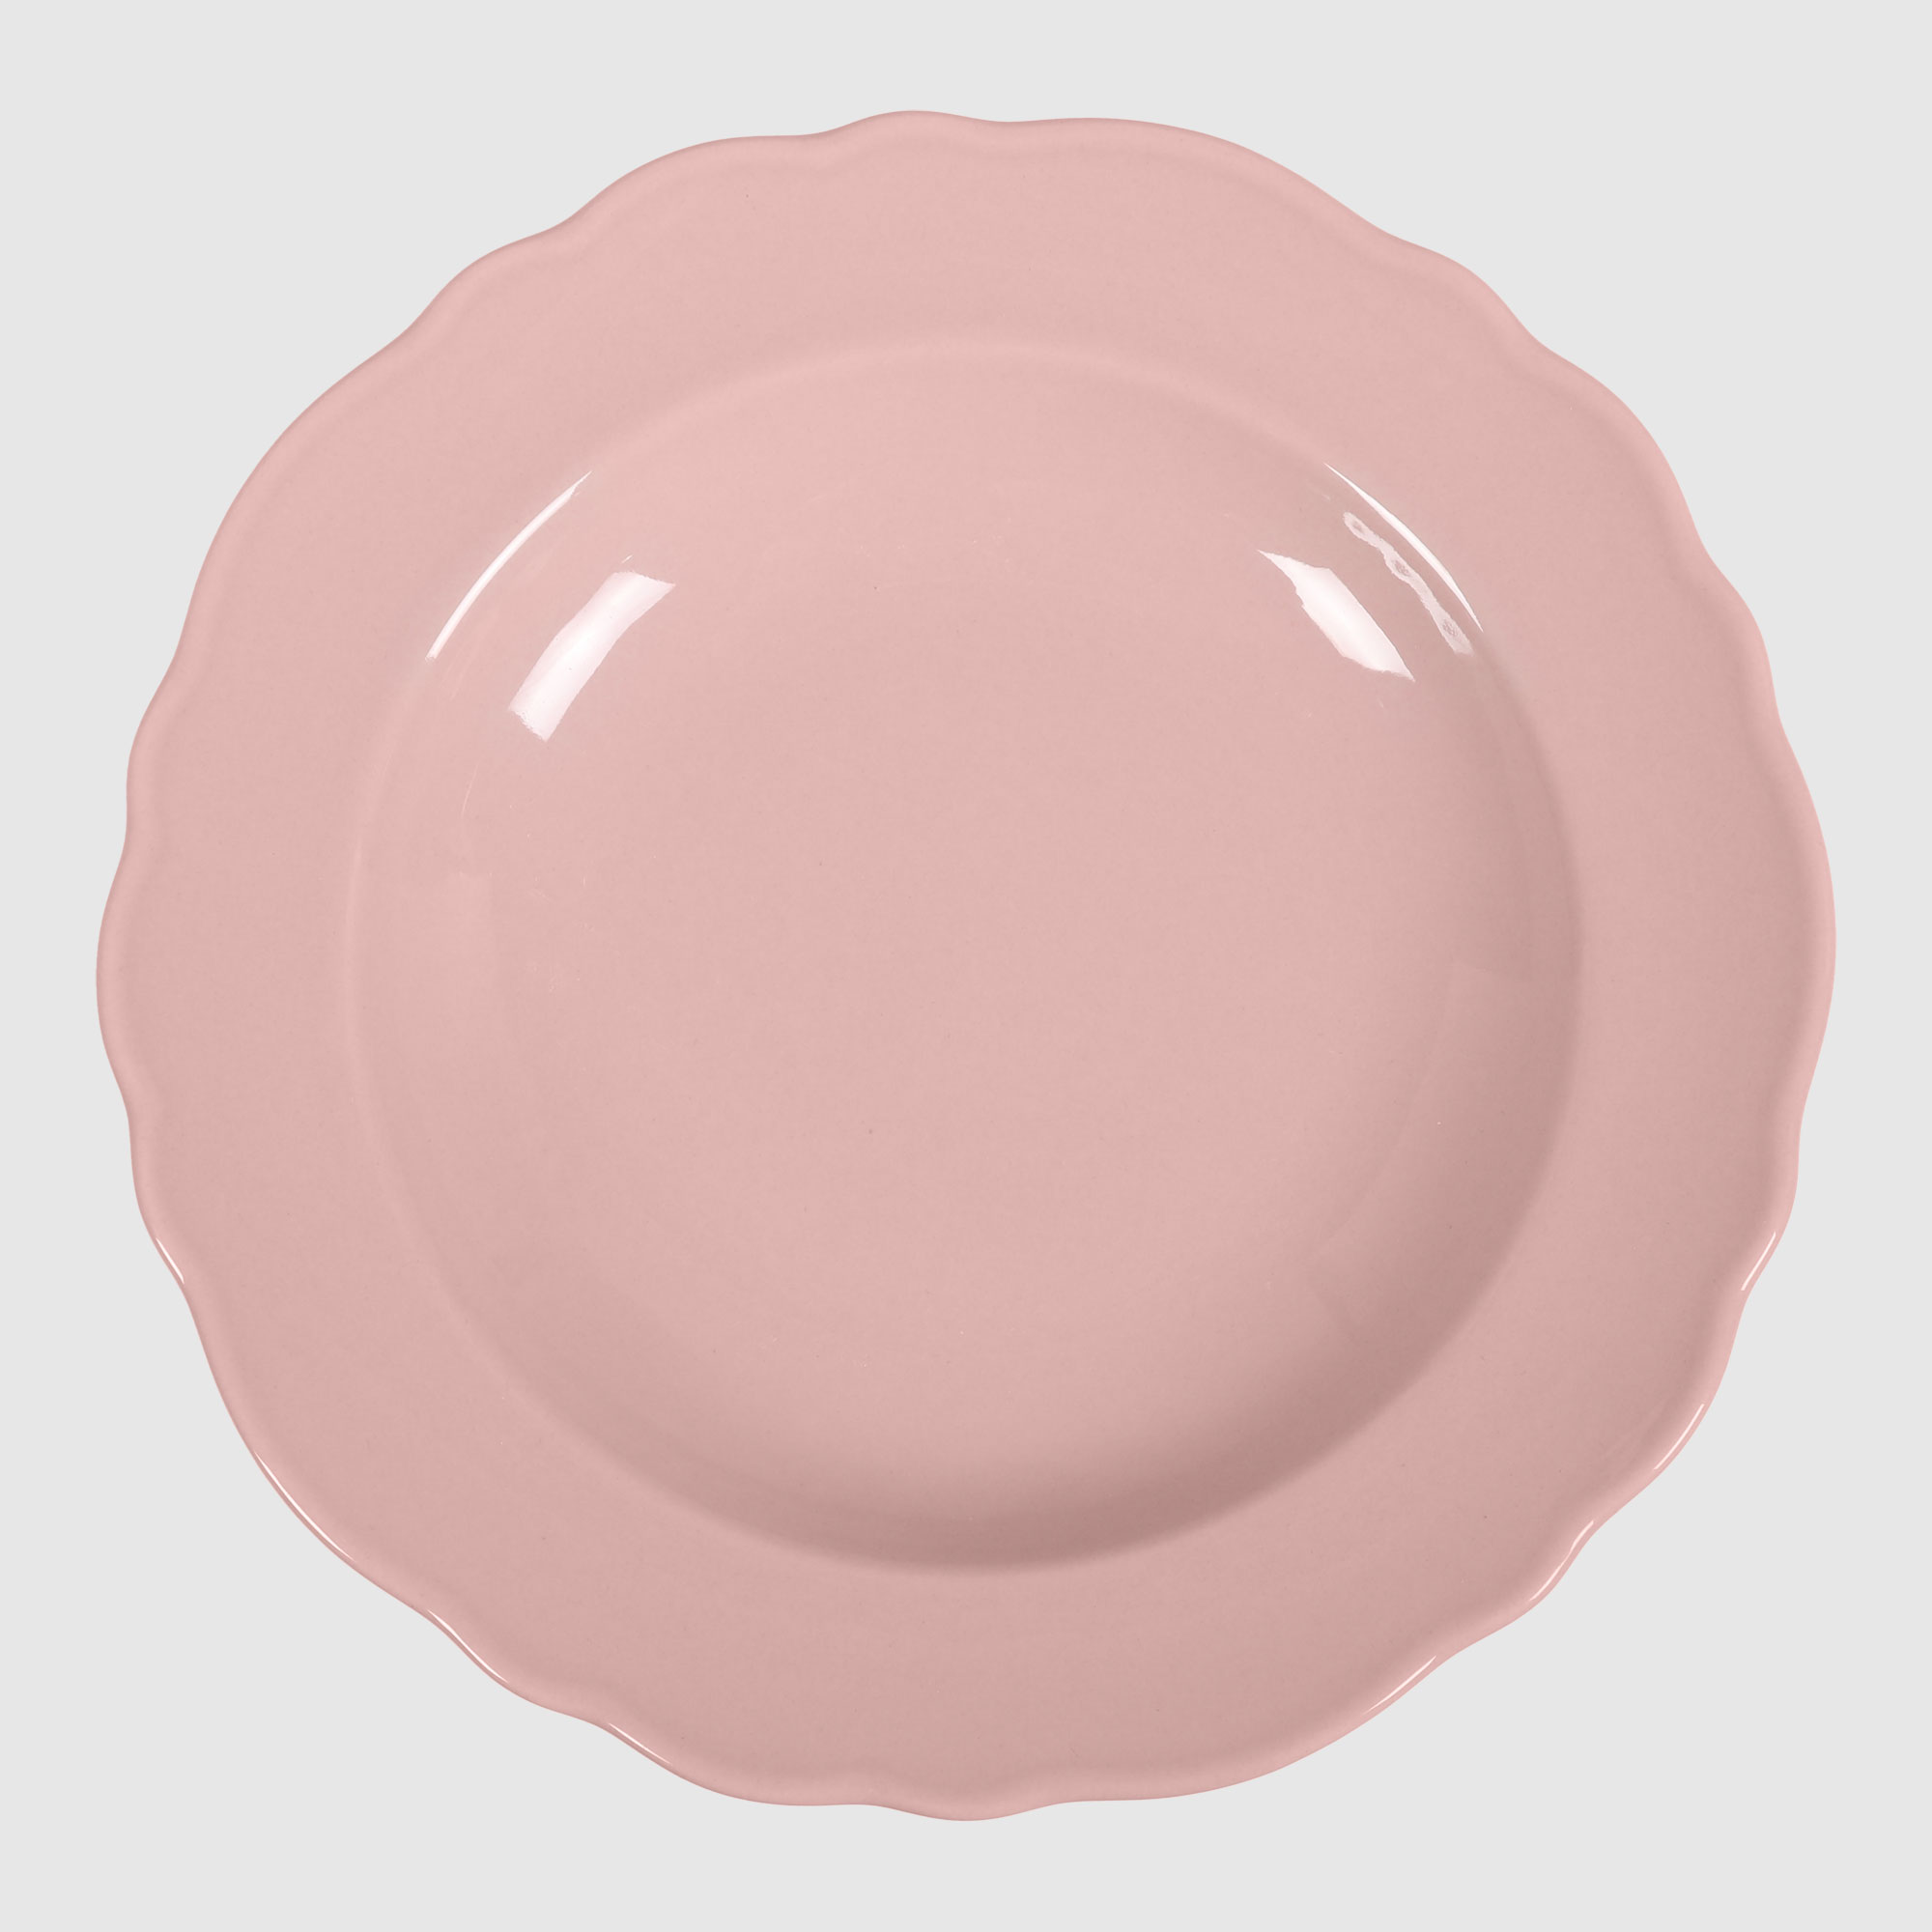 Тарелка глубокая Kutahya porselen Lar розовая 22 см тарелка глубокая kutahya porselen iron 22 см